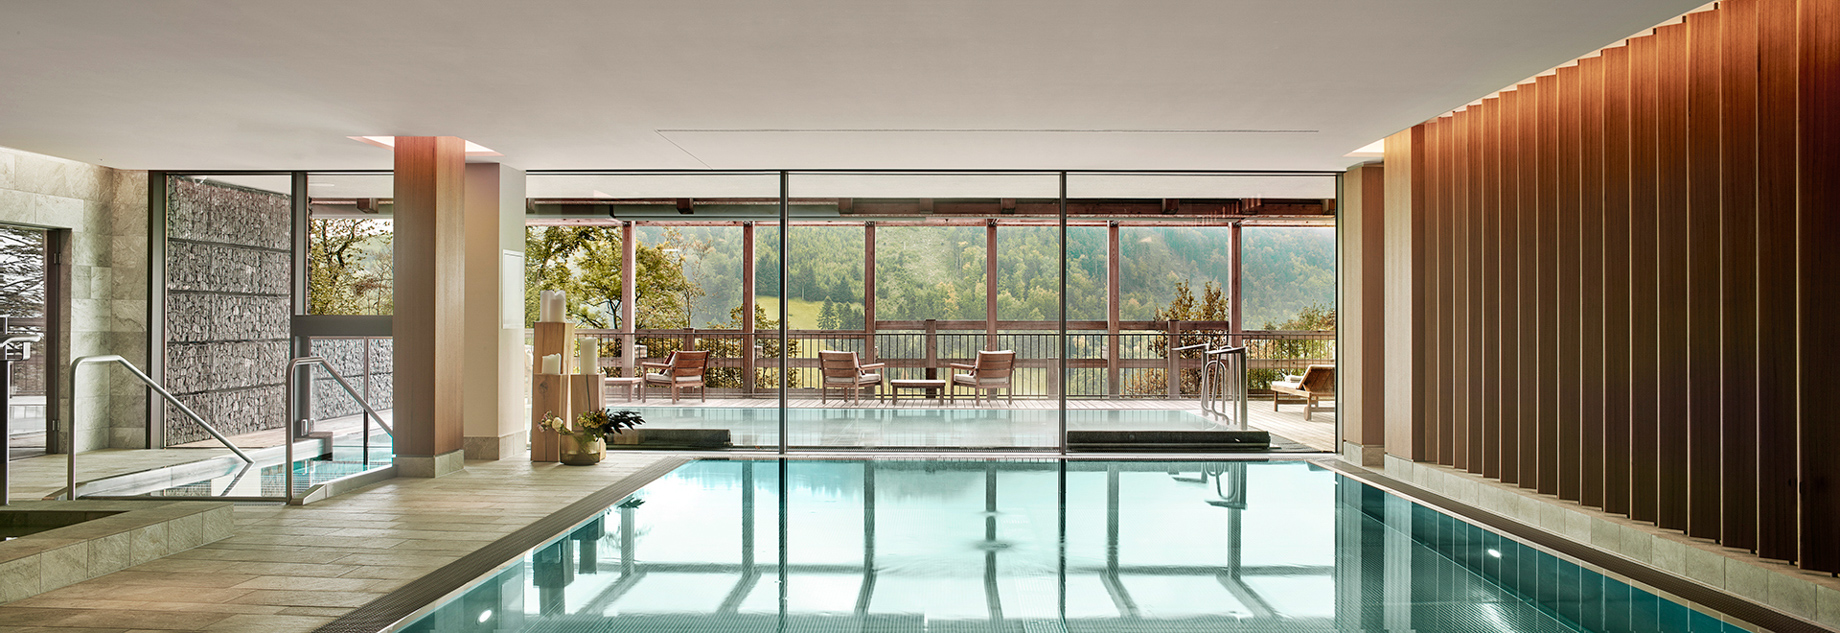 Waldhotel - Burgenstock Hotels & Resort - Obburgen, Switzerland - Spa Wet Area Indoor Pool